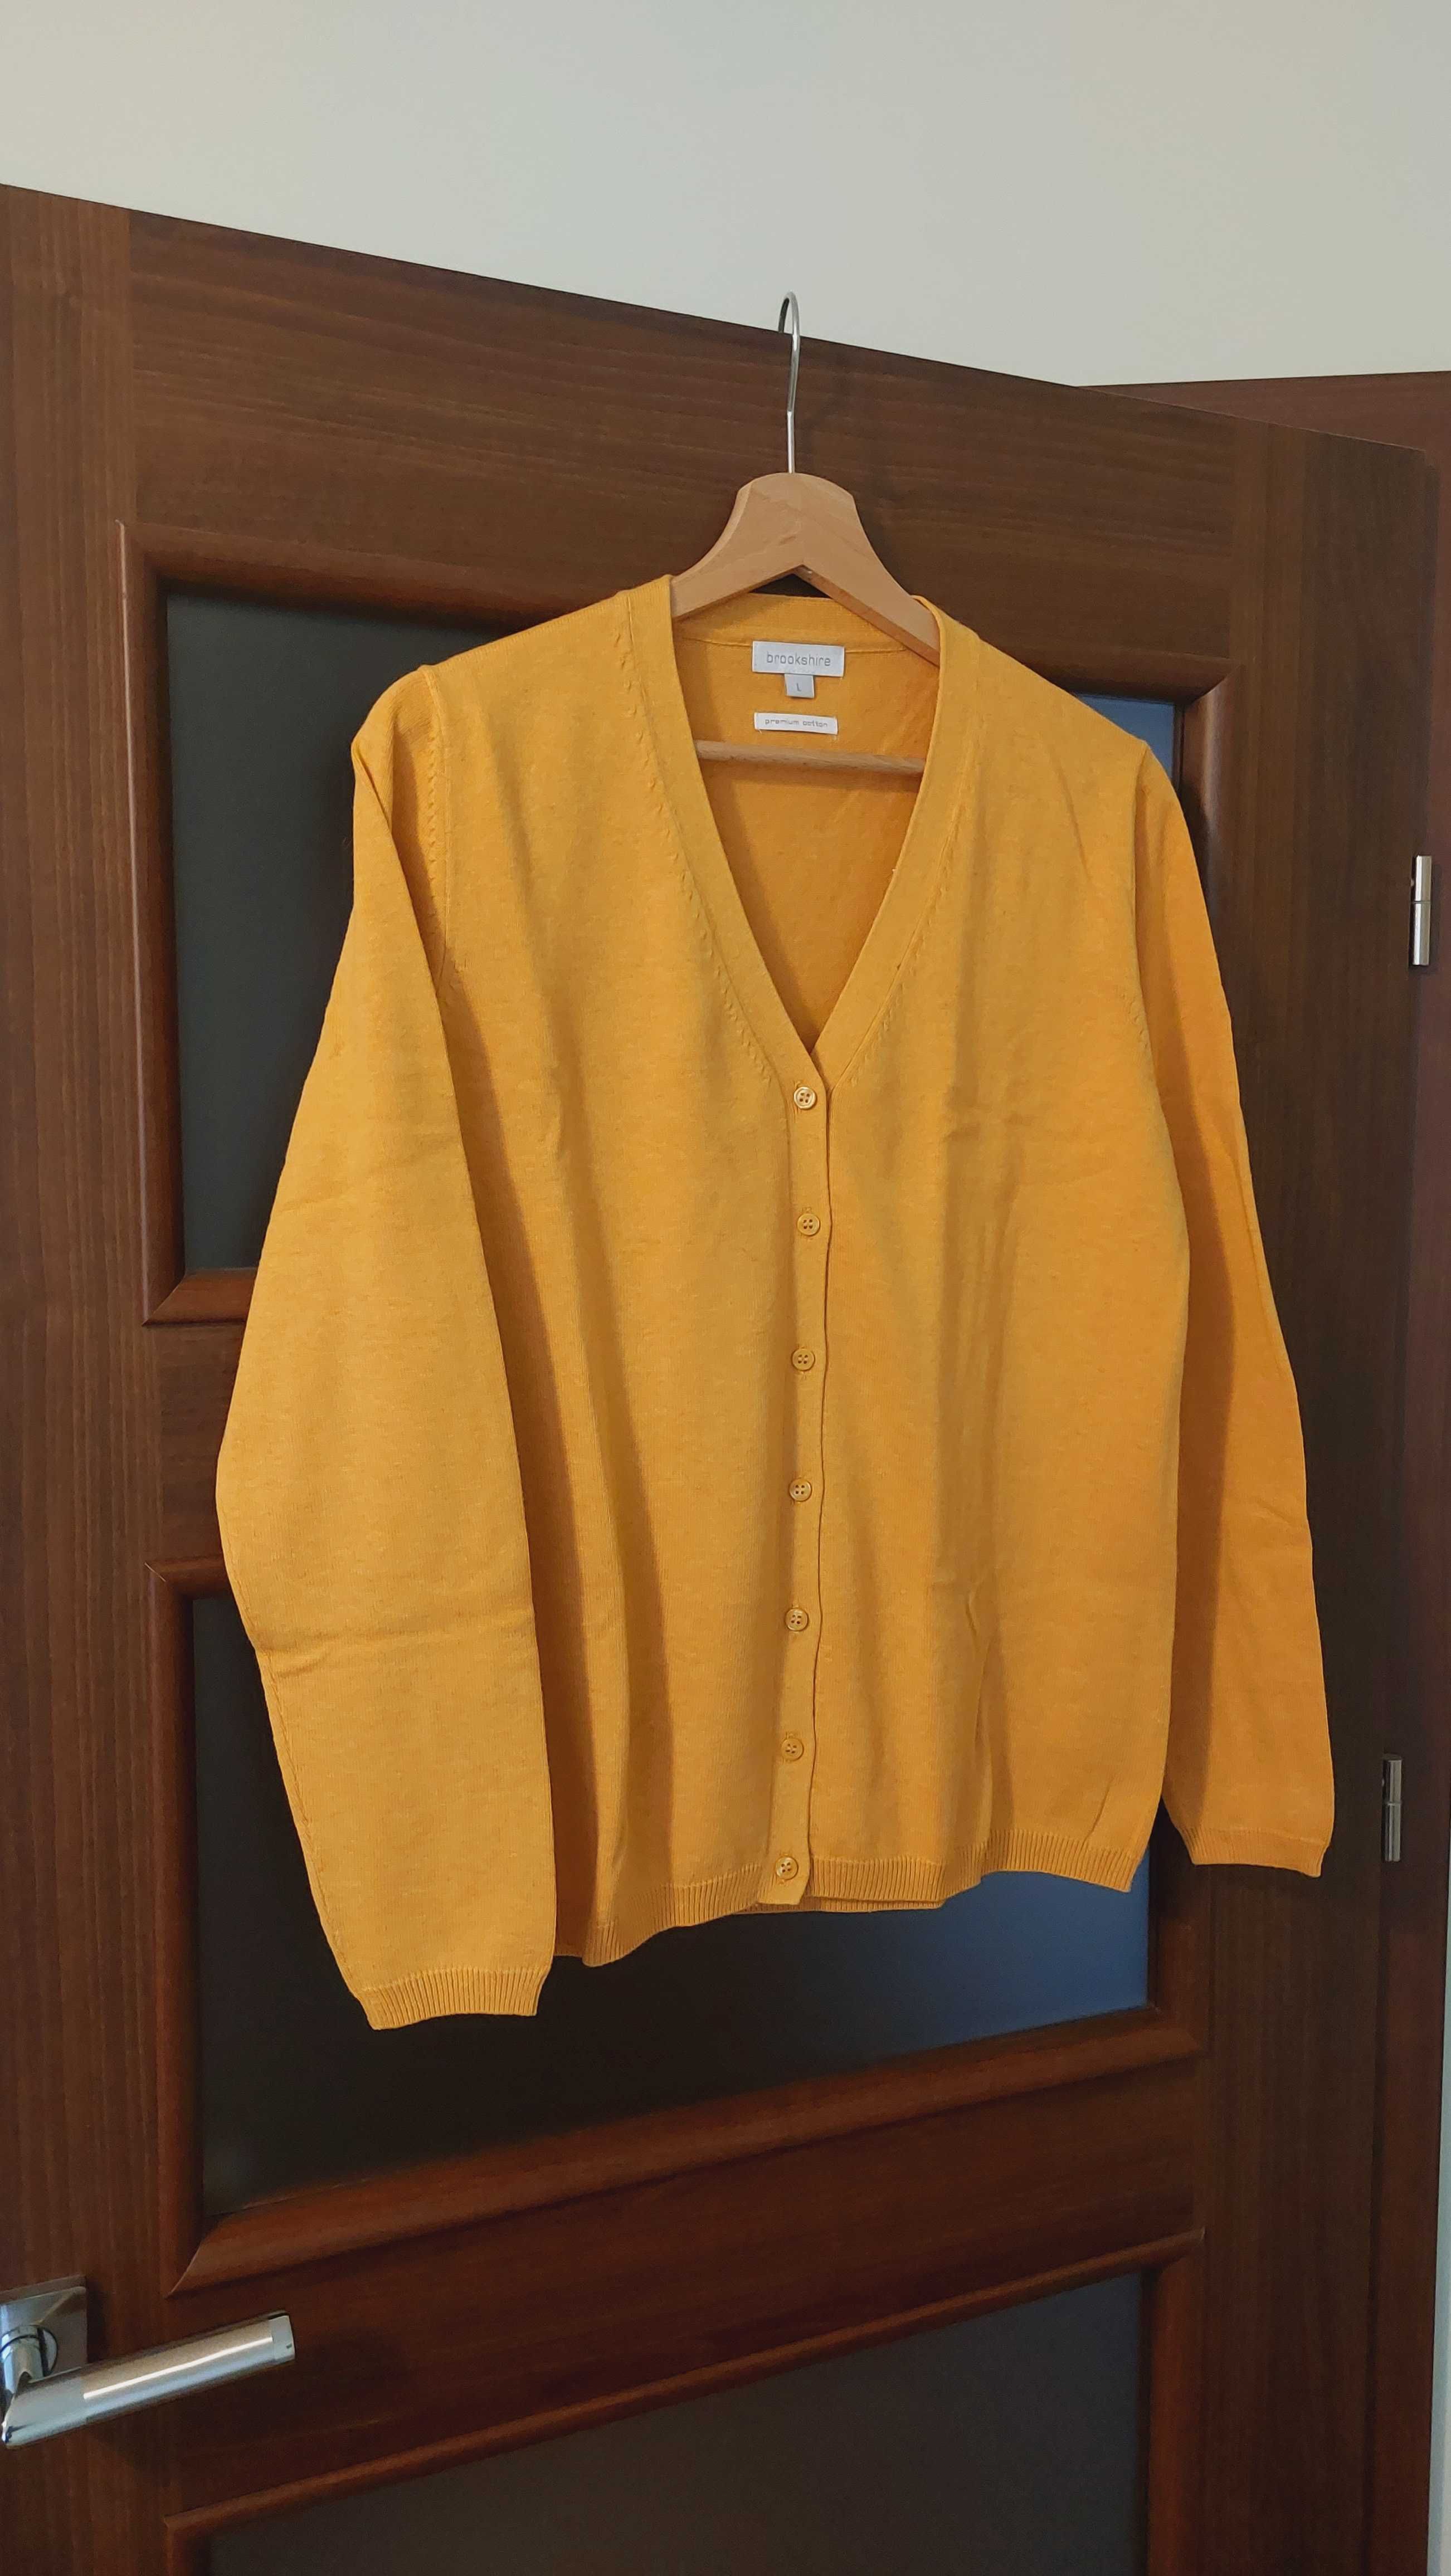 Sweter damski żółty